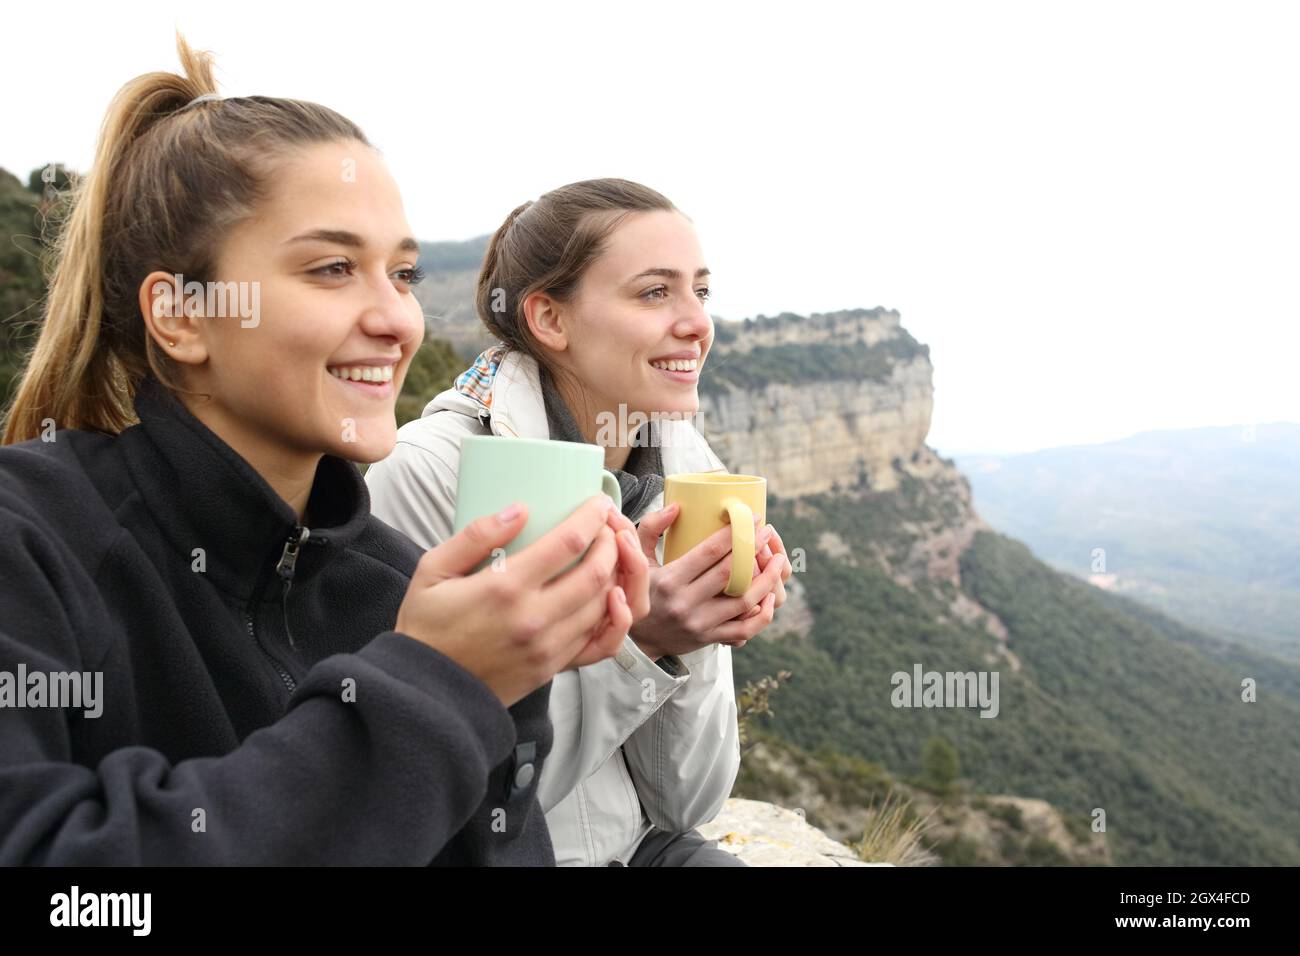 Zwei glückliche Wanderer, die Kaffee trinken und in einer Klippe nachsinnen Stockfoto